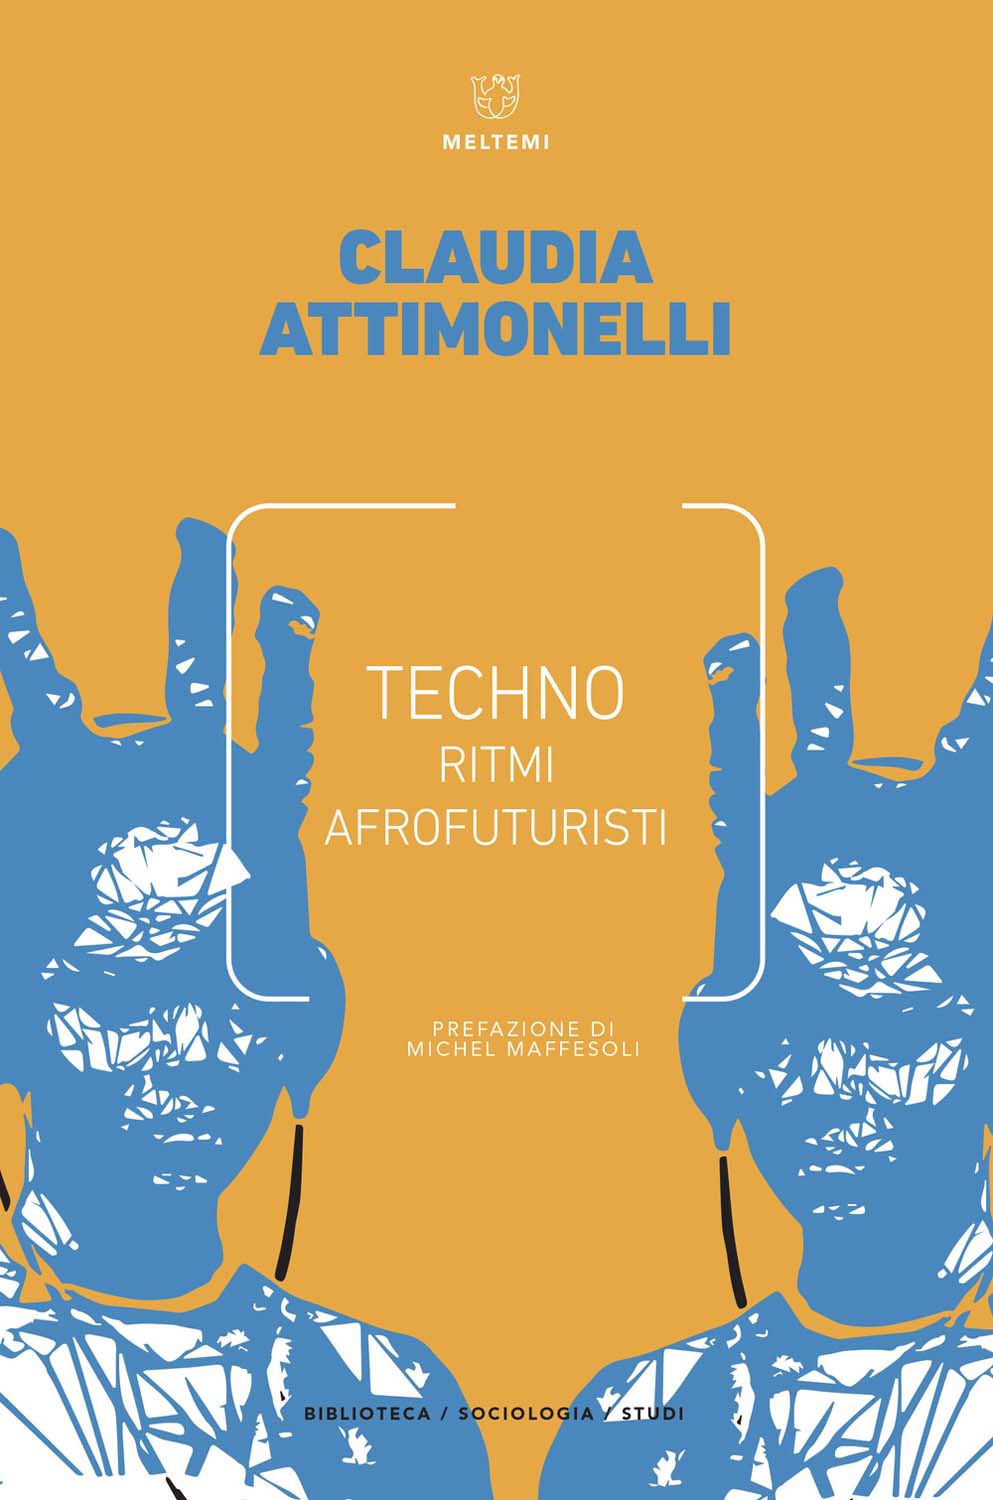 Libri Claudia Attimonelli - Techno. Ritmi Afrofuturisti NUOVO SIGILLATO, EDIZIONE DEL 12/07/2018 SUBITO DISPONIBILE